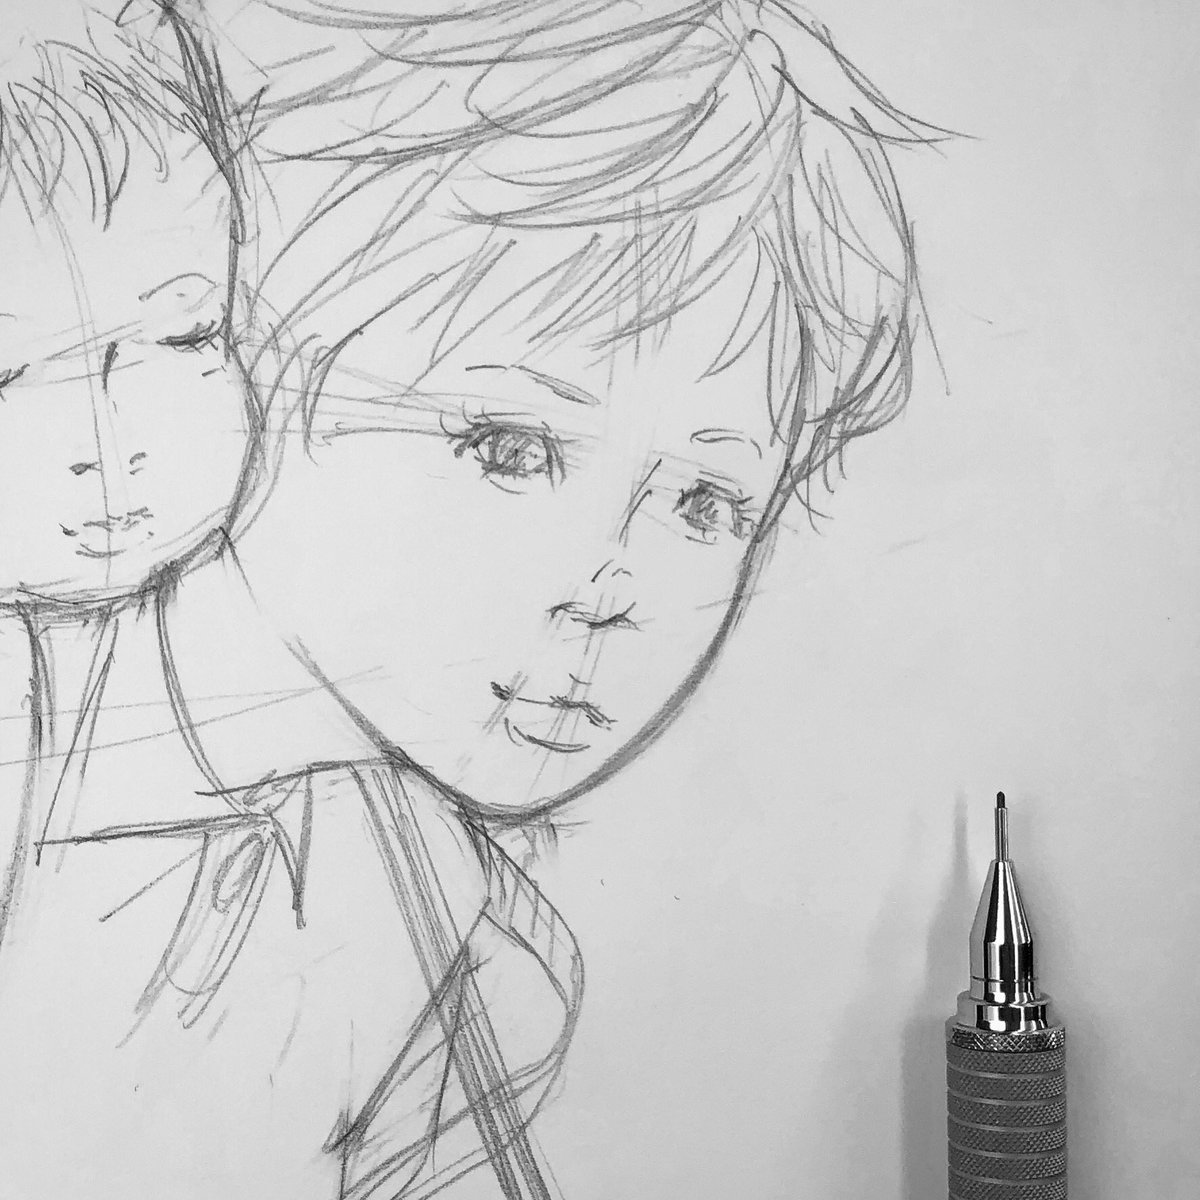 クロセシンゴ Pa Twitter らくがきサツキ 下描き 絵 イラスト アナログ 線画 鉛筆 モノクロ 白黒 ジブリ となりのトトロ サツキ らくがき Illustration Art Artwork Draw Drawing Linedrawing Pencil Monochrome Blackandwhite Ghibli